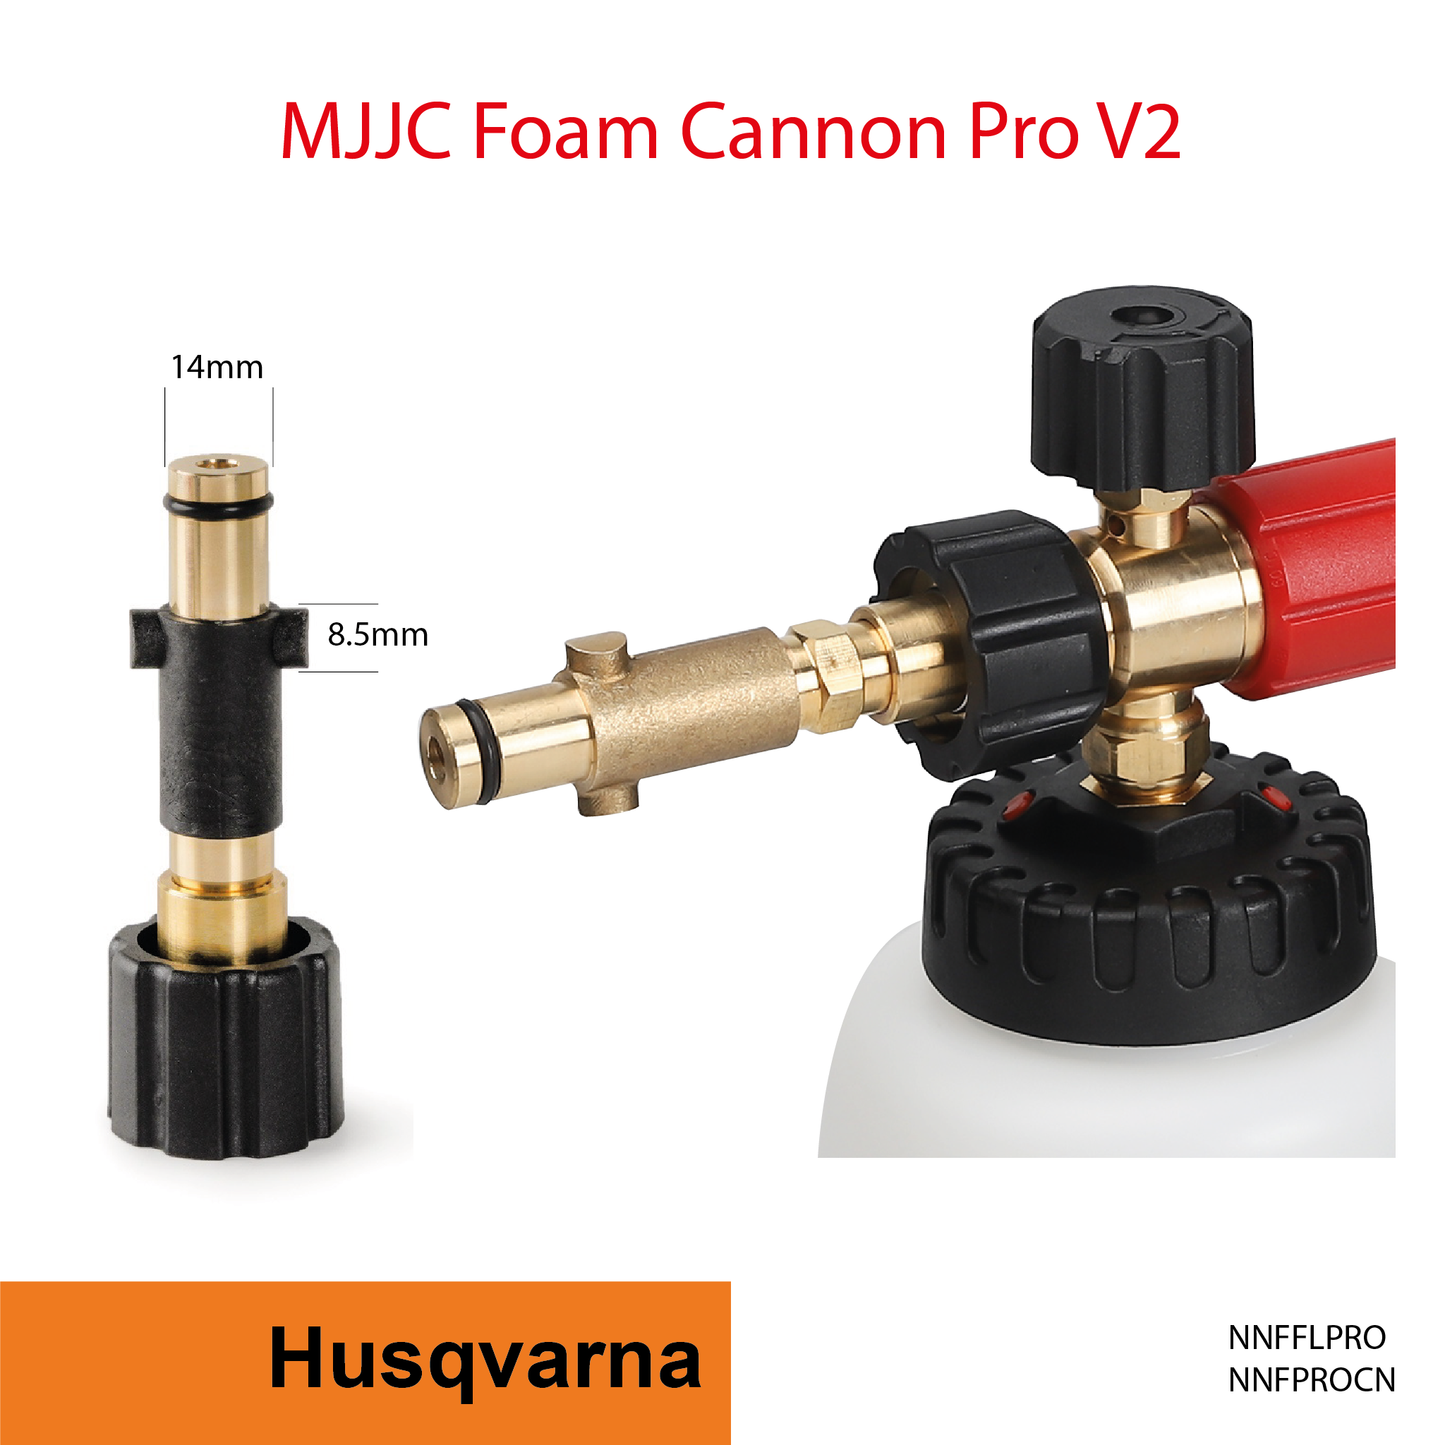 Husqvarna Adapter for MJJC Foam Cannon Pro V2 (NNFFLPRO)